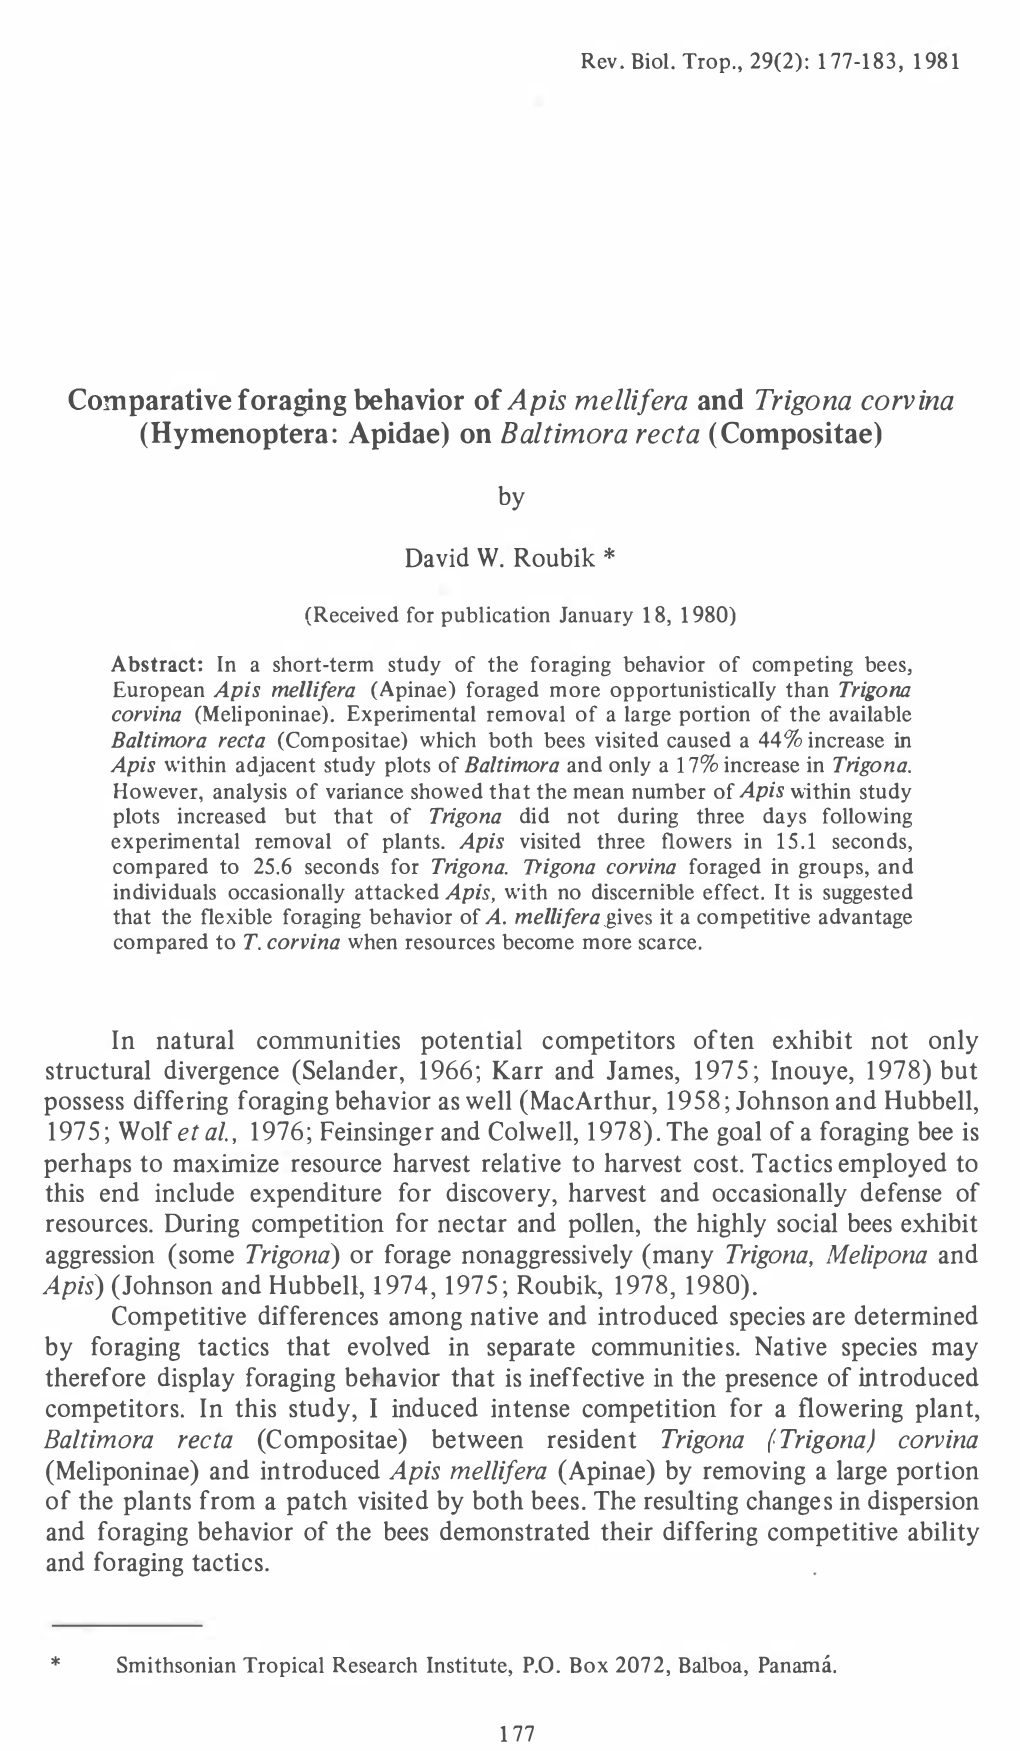 Comparative Foraging Behavior of Apis and Trigona 179